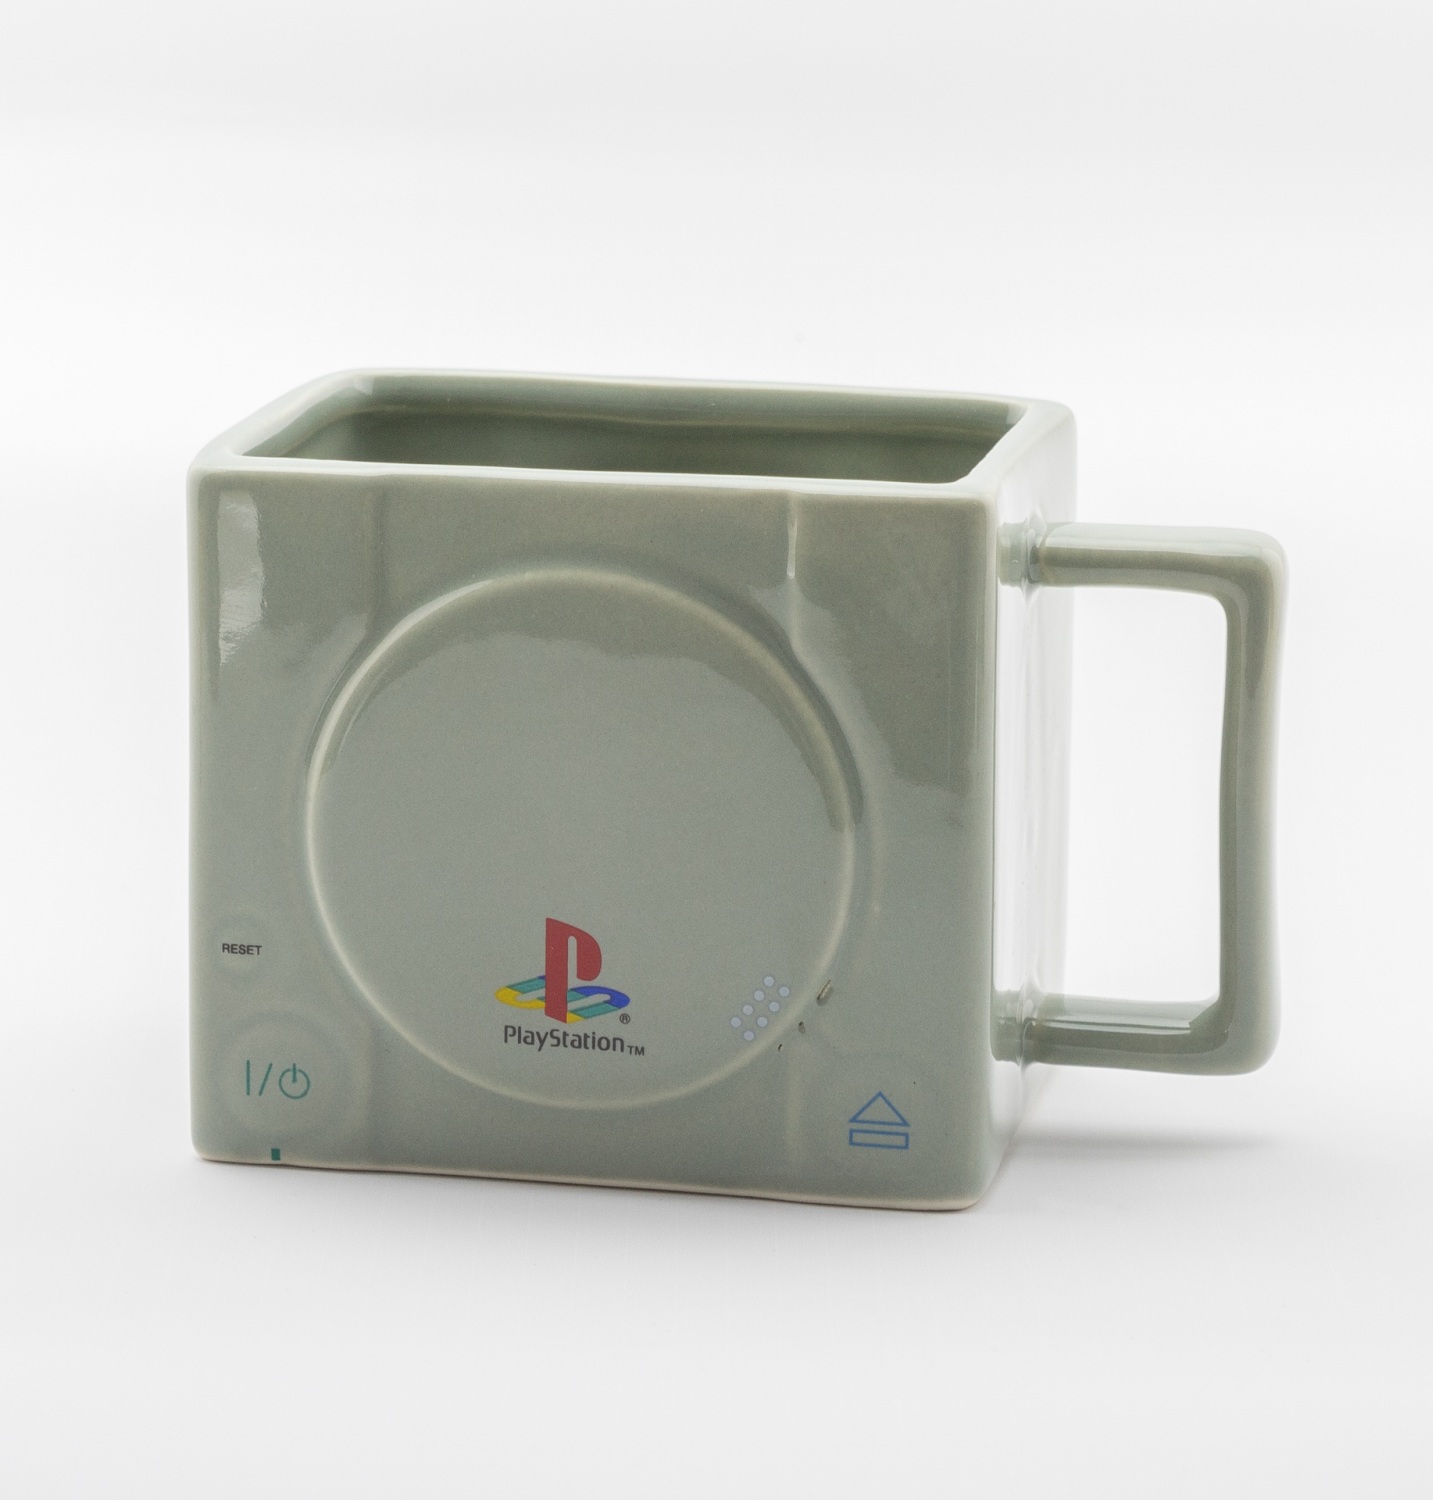 Hrnček PlayStation - 3D Console